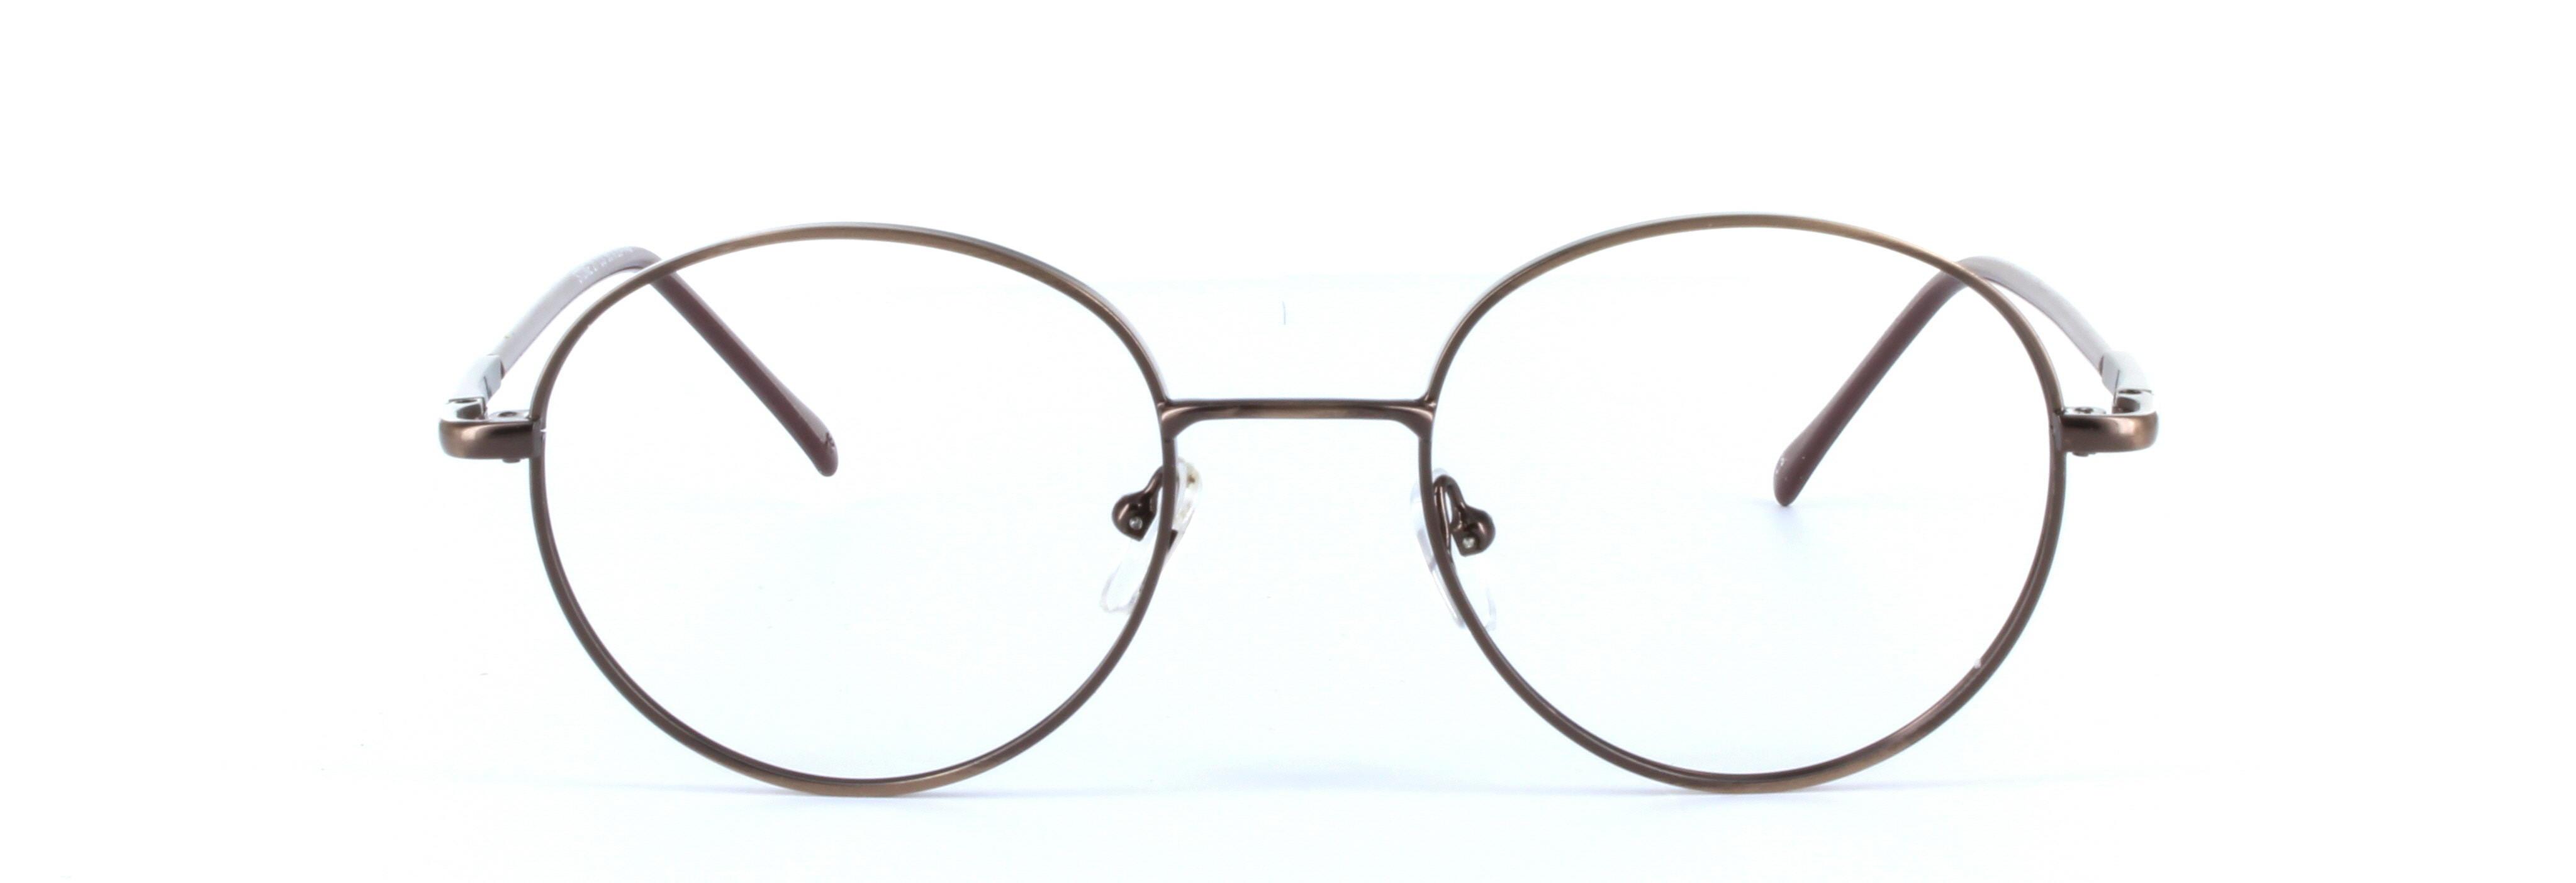 Discus Brown Full Rim Round Metal Glasses - Image View 5